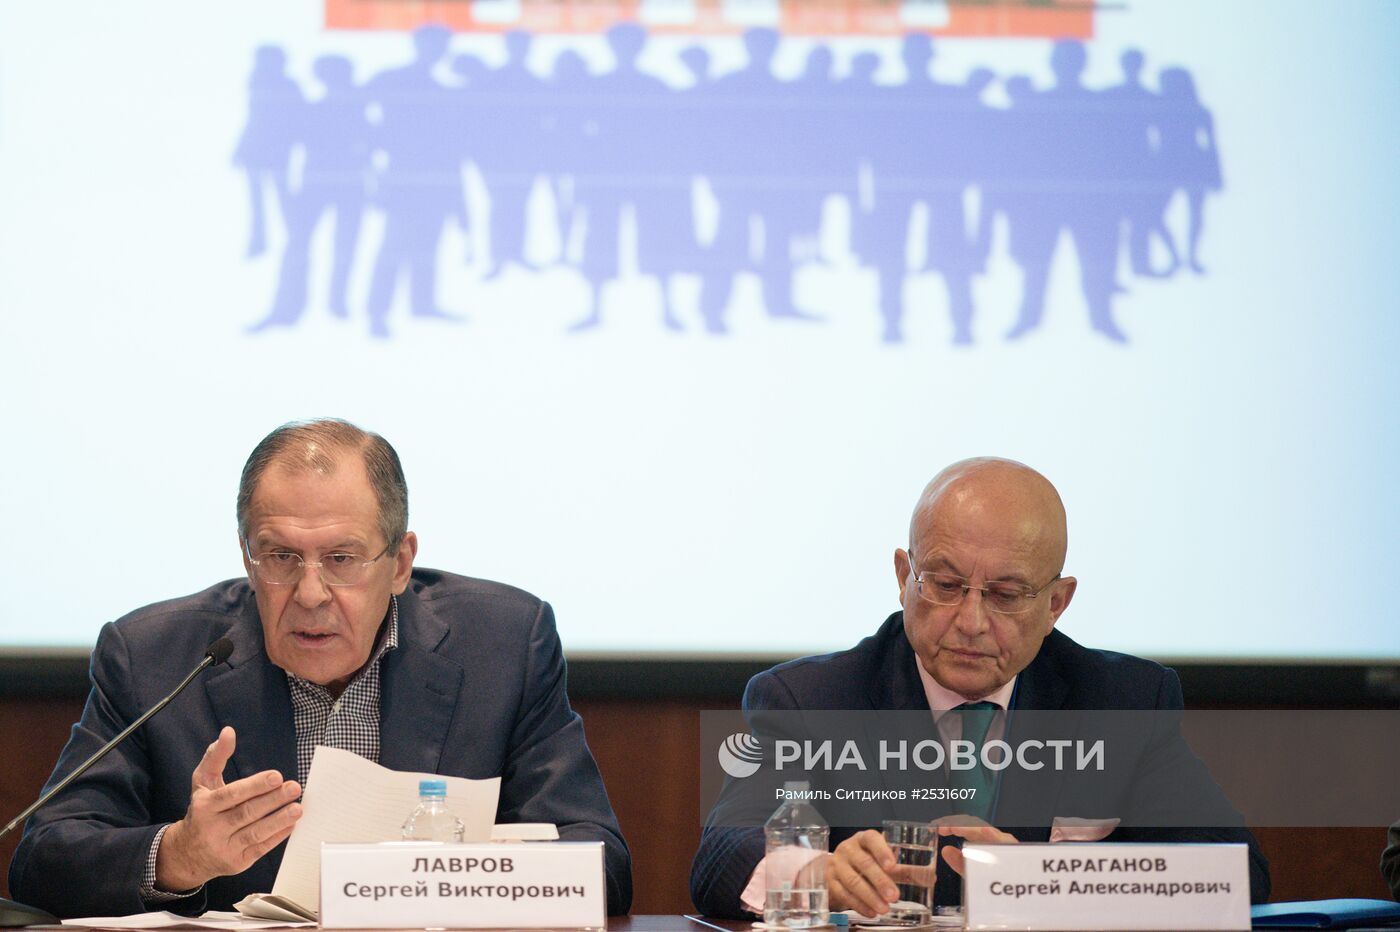 Заседание Ассамблеи Совета по внешней и оборонной политике России с участием министра иностранных дел С.Лаврова